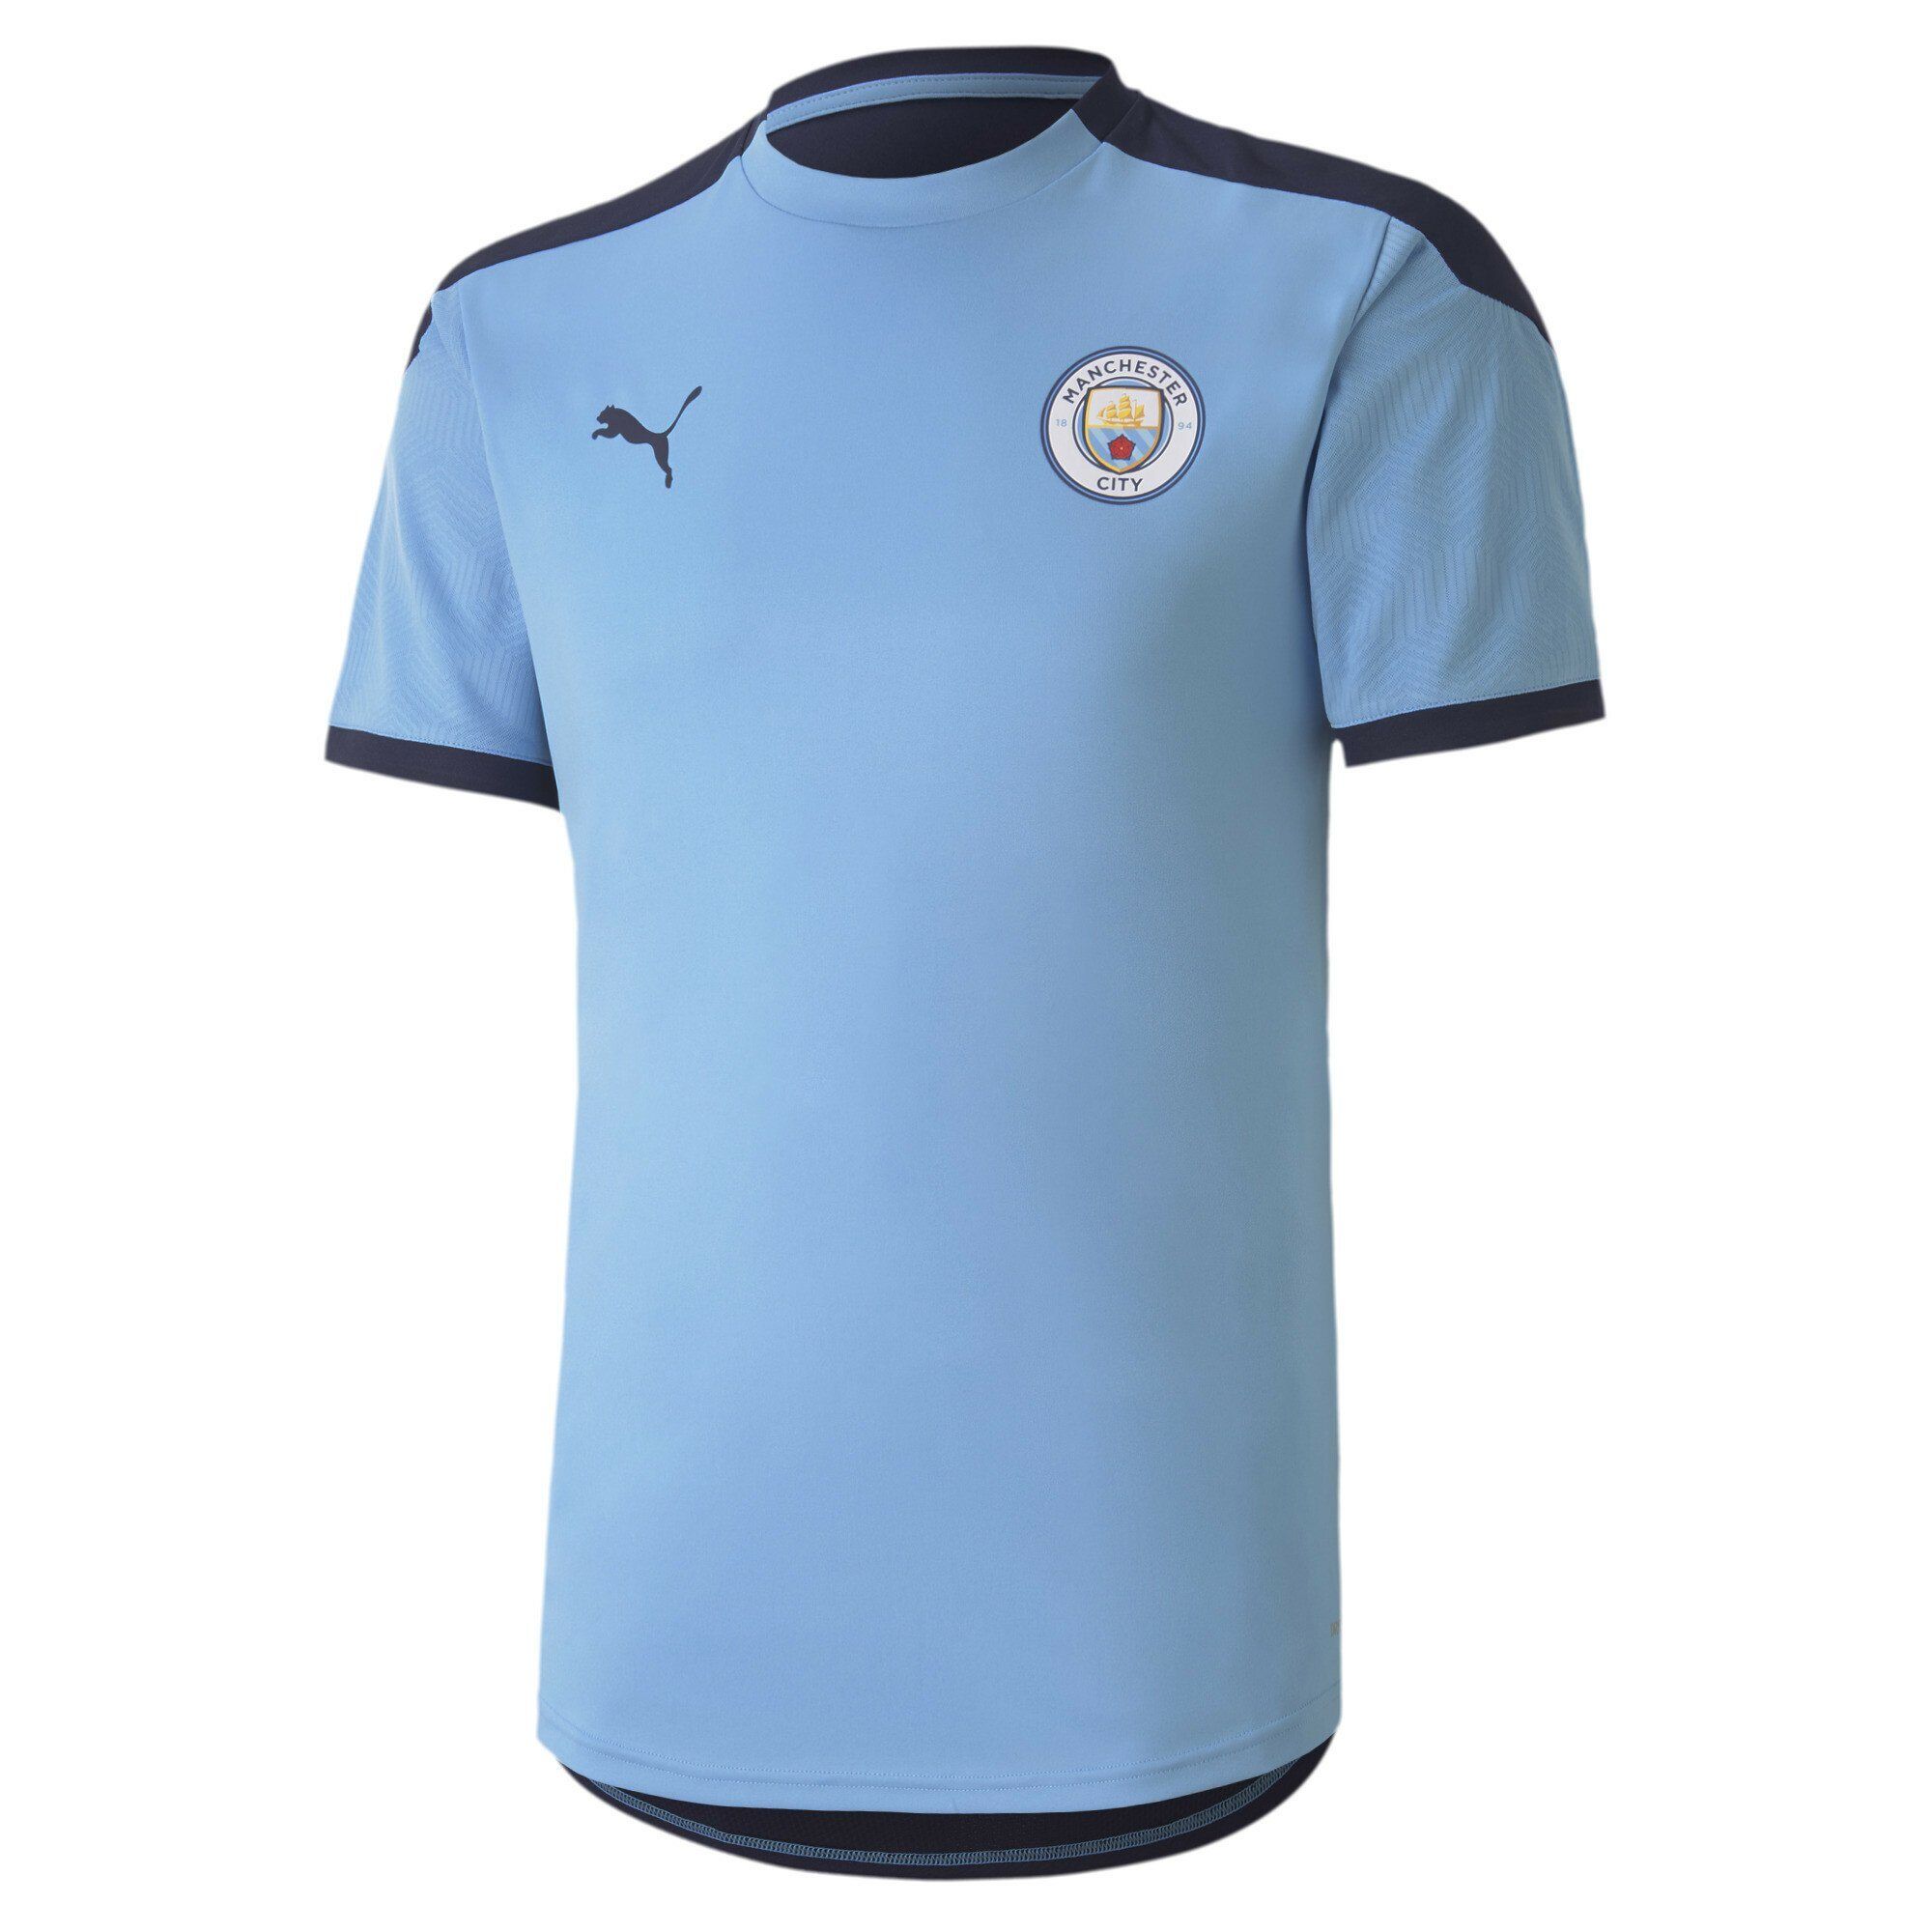 Puma T-Shirt »Man City Herren Trainingstrikot«, blau